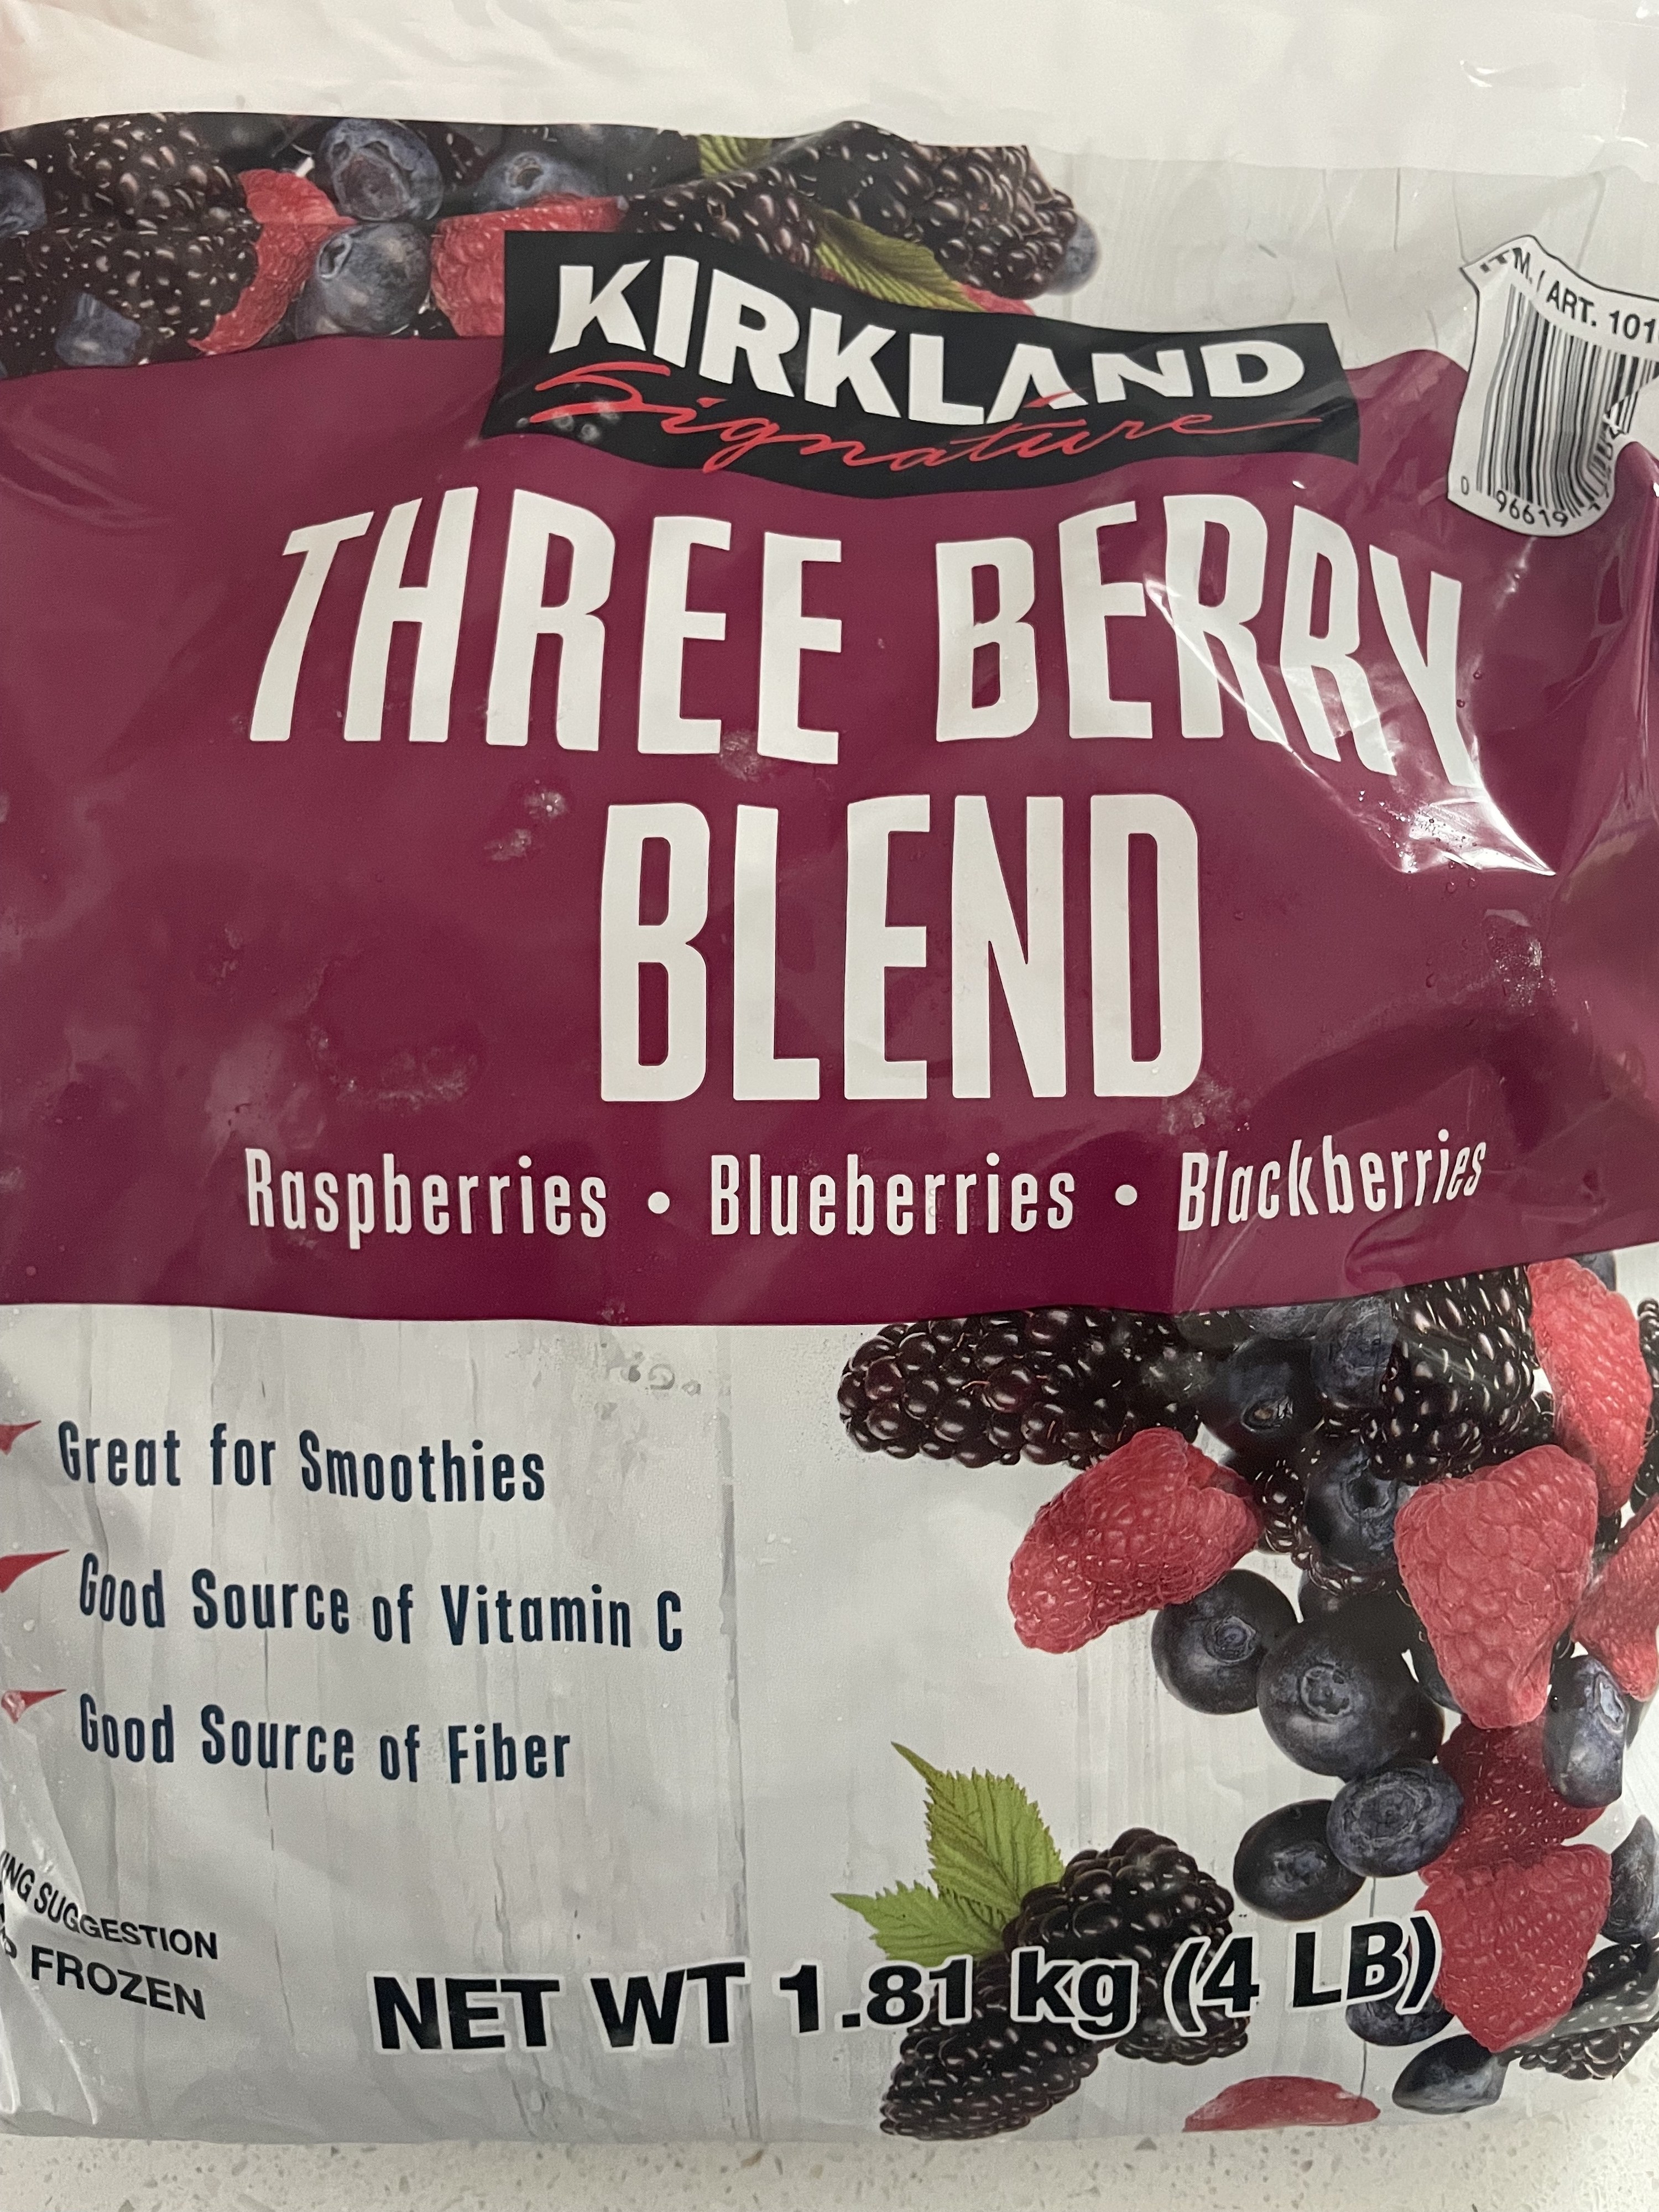 Kirkland Frozen Three Berry Blend